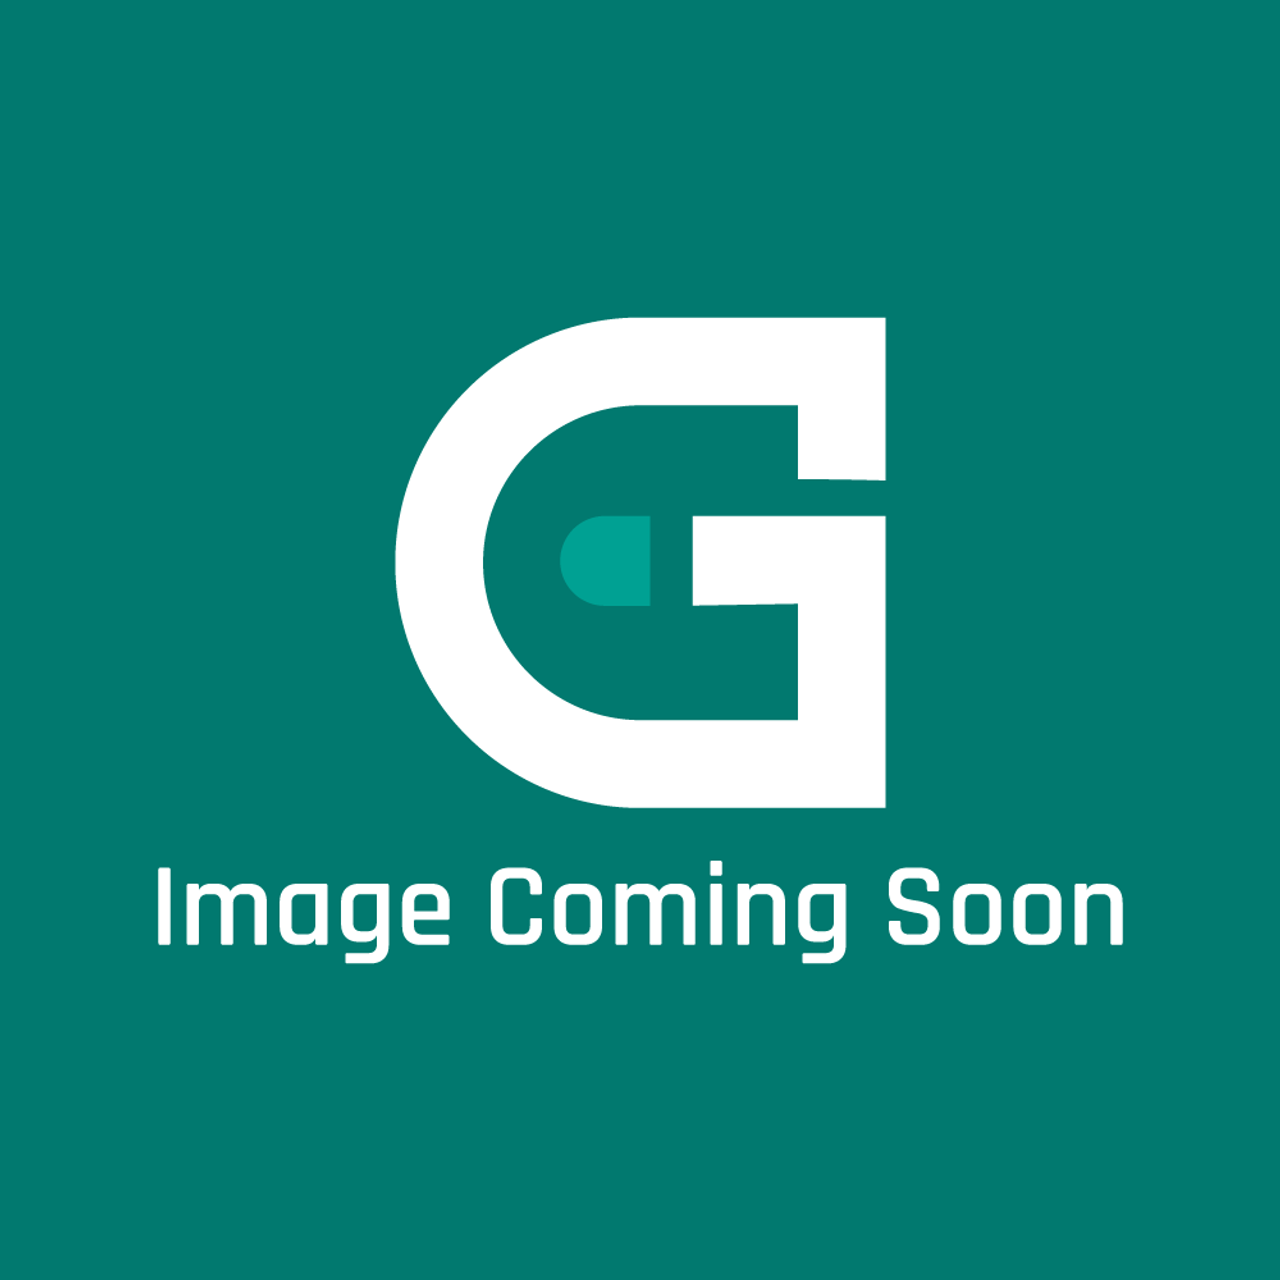 Pitco B6788801 - Wrg, Kit B&C Cntr W/Ei I Gn Opt - Image Coming Soon!